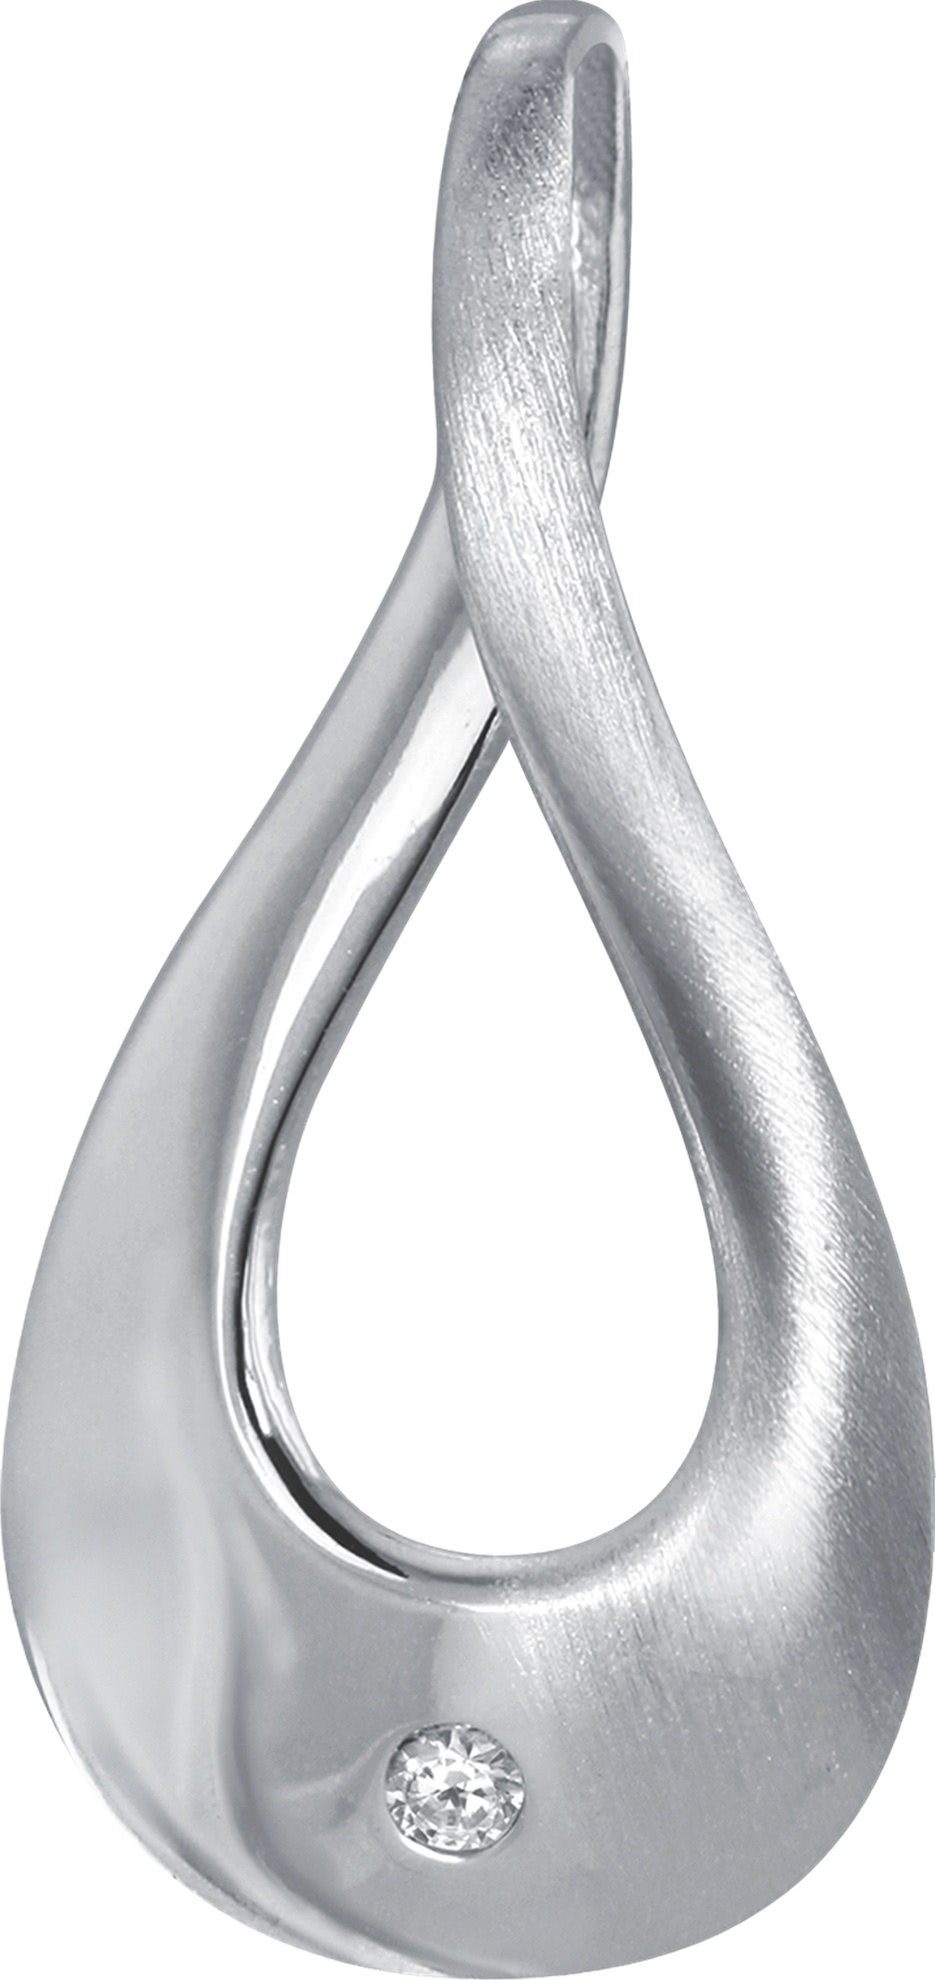 Balia ca. 925 Kettenanhänger Kettenanhänger Damen Silber Silber, 2,5cm, Sterling (Elegance) Kettenanhänger Balia